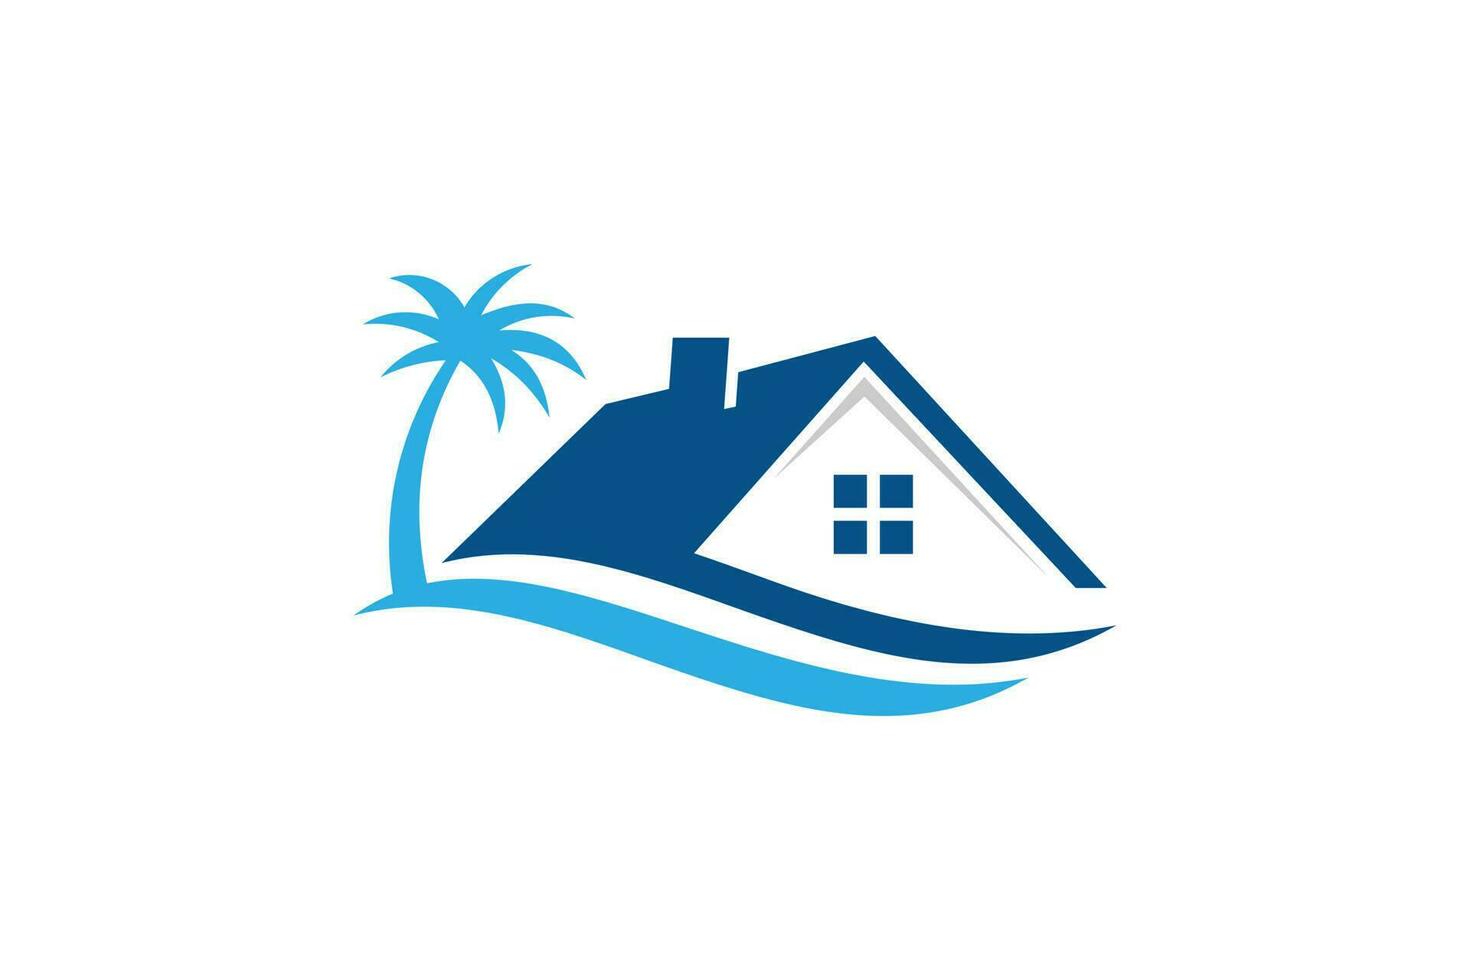 Beach house logo design vector